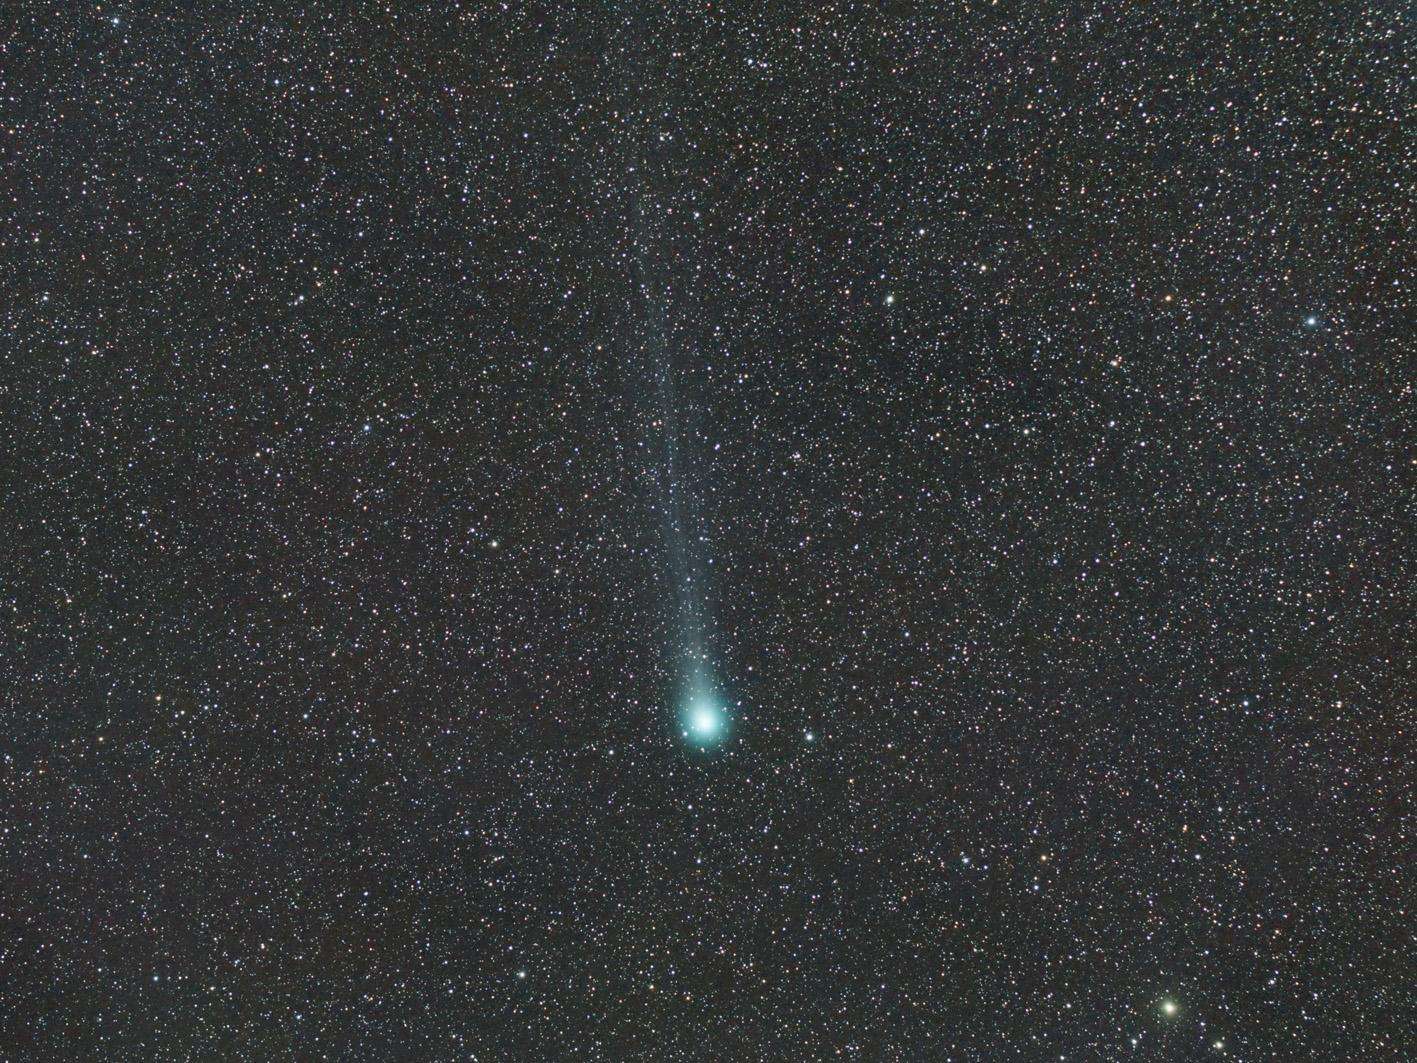 La comète C/2014 Q2 (Lovejoy) prise en photo le 12 février 2015. © Fabrice Noël